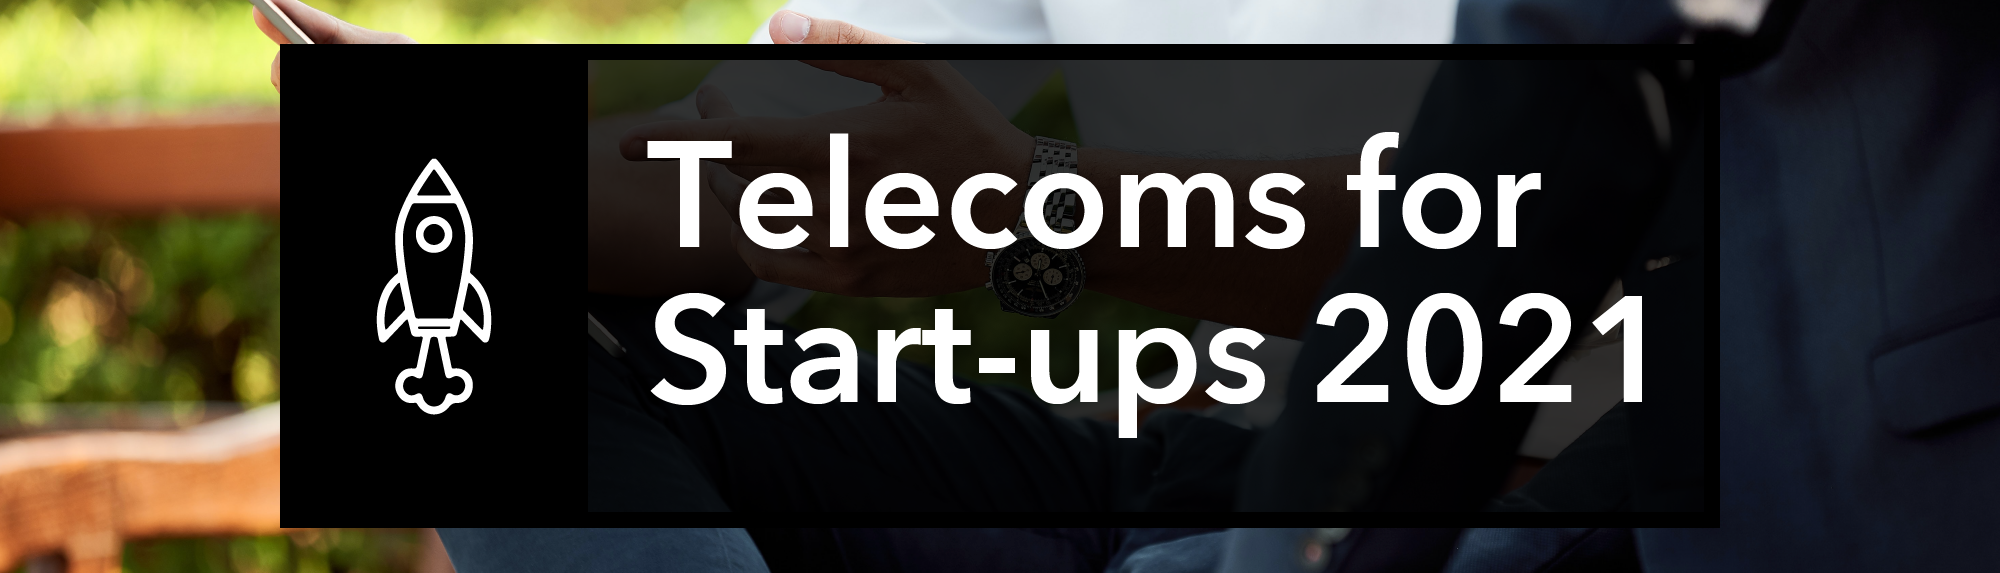 Telecoms for start-ups